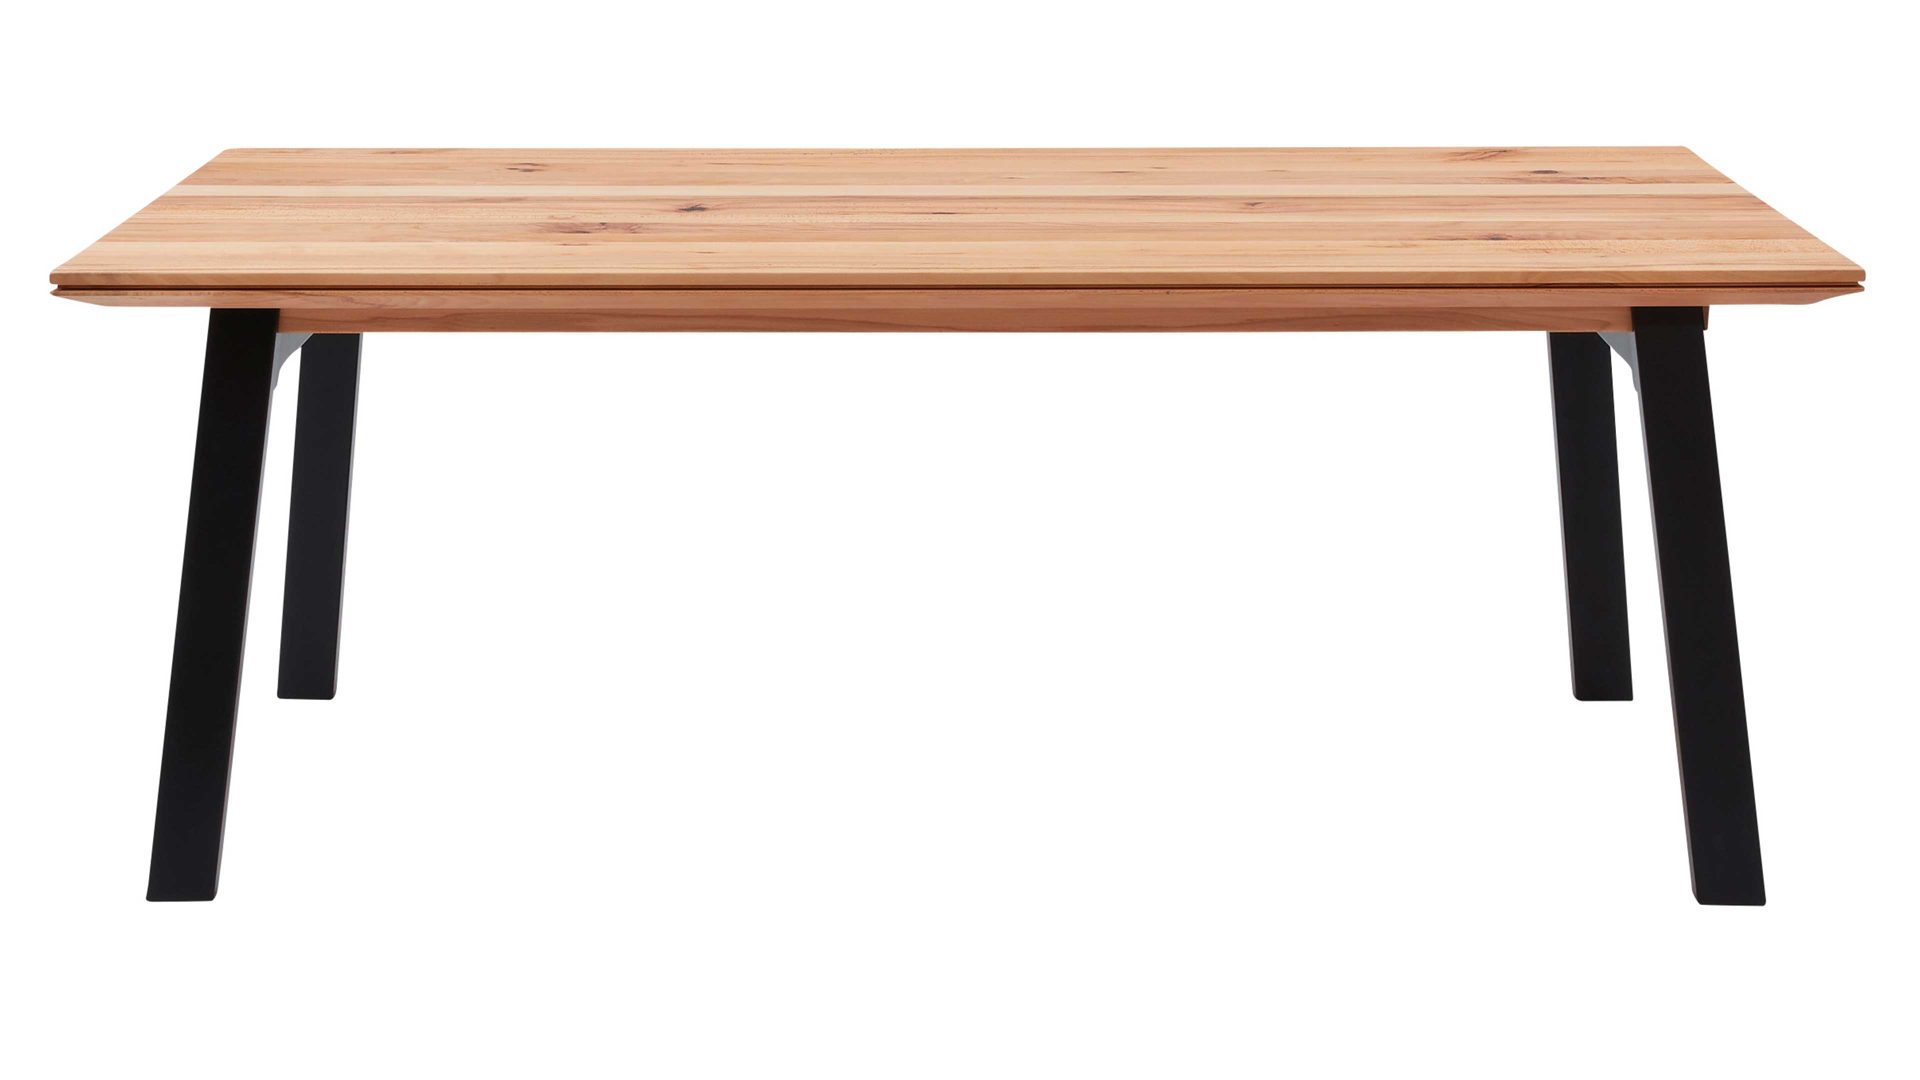 Auszugtisch Interliving aus Holz in Holzfarben Interliving Esszimmer Serie 5102 – Auszugtisch V513 Charakter-Kernbuche & schwarzes Eisen – ca. 180-230 x 100 cm